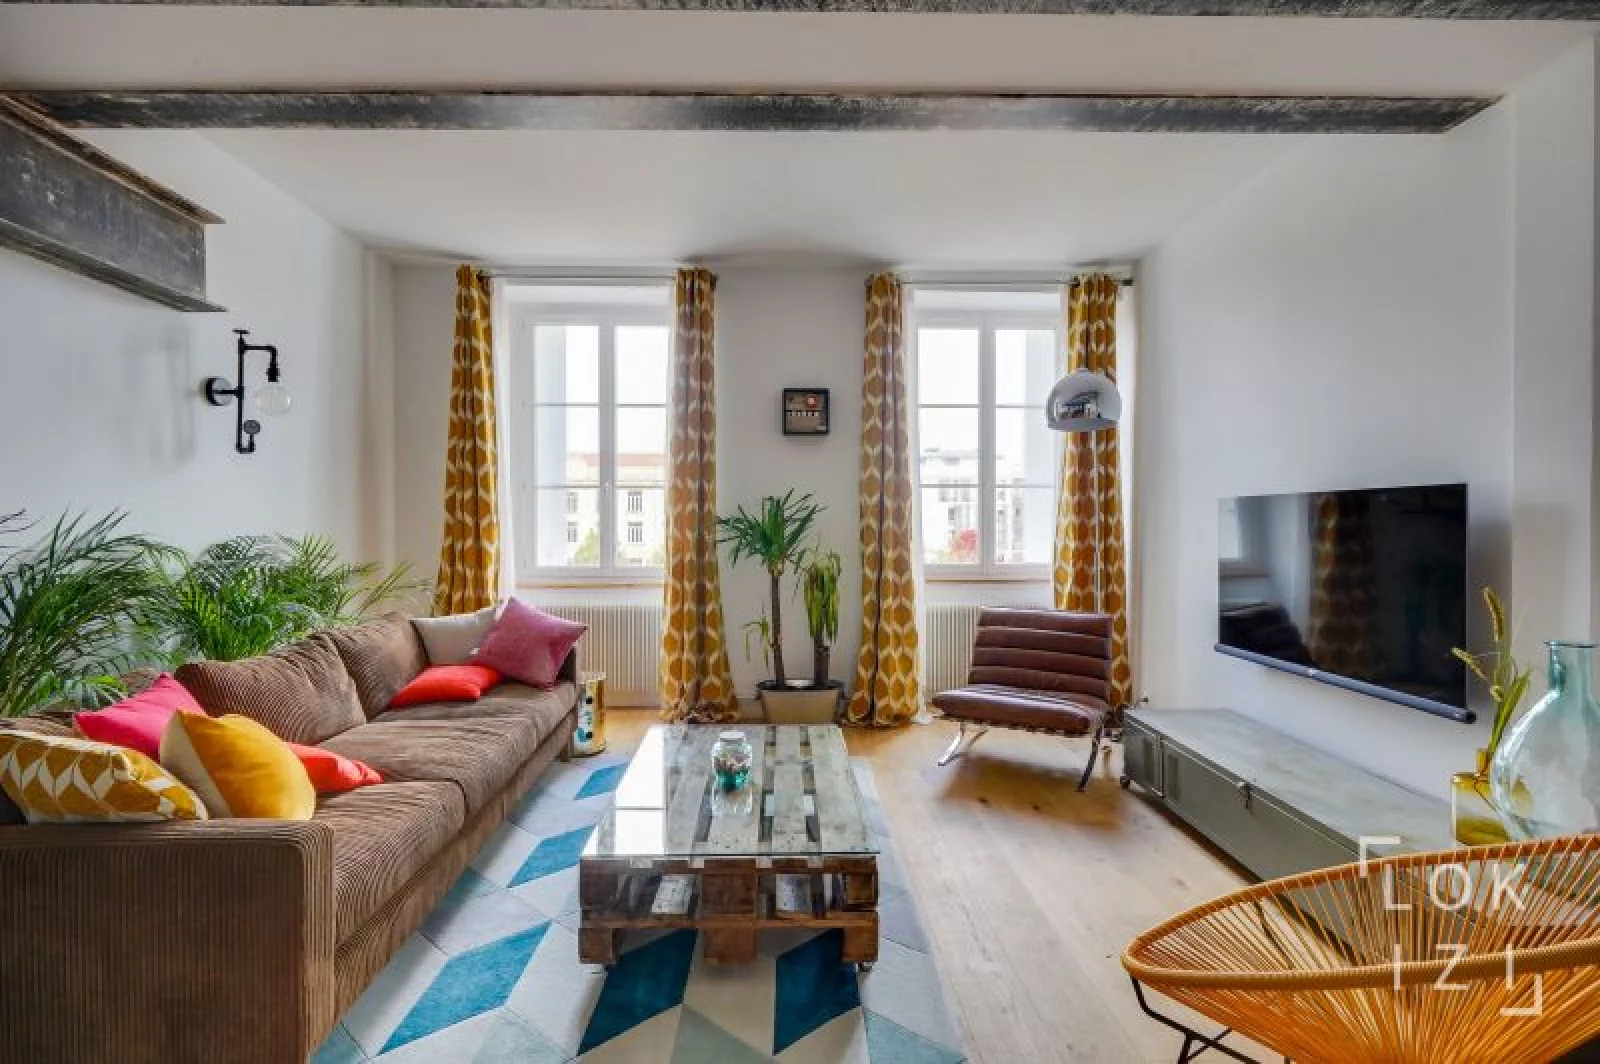 Location appartement meublé 3 pièces 73m² (Bordeaux - Chartrons)